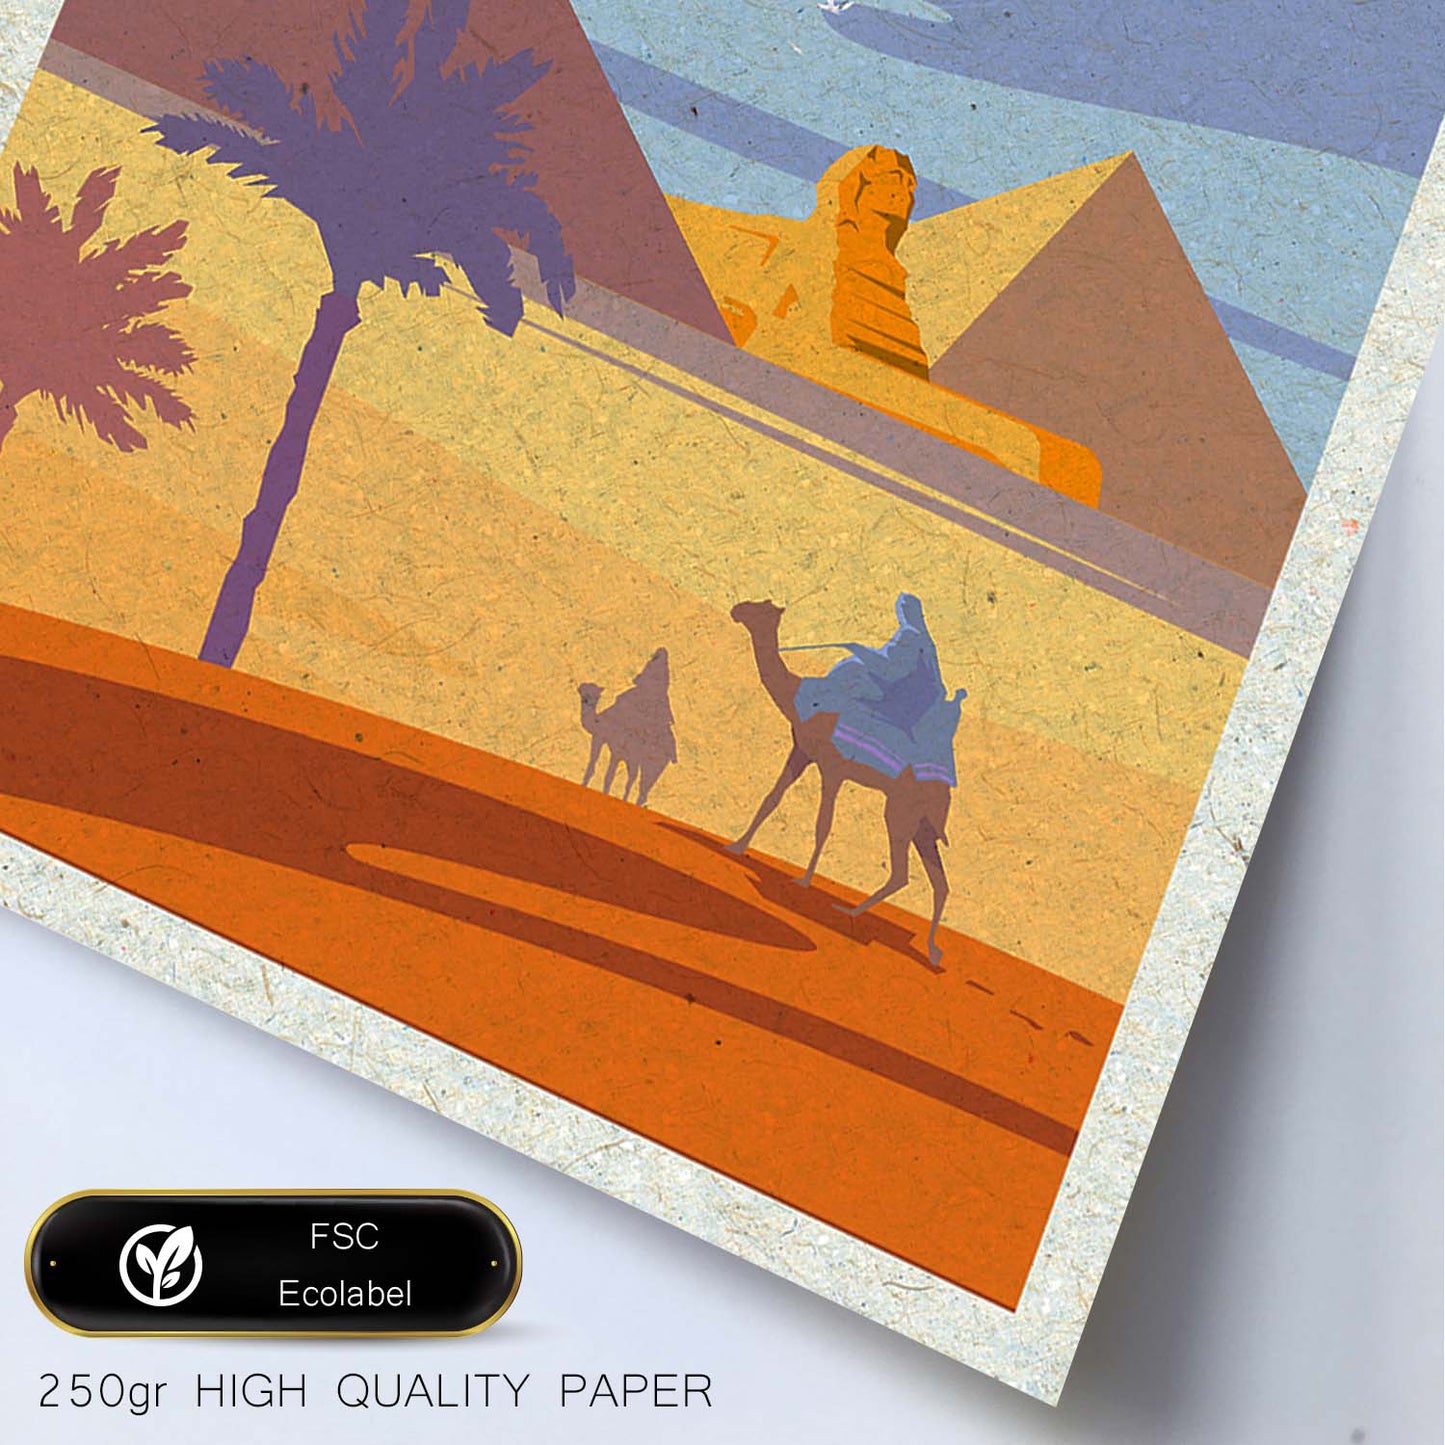 Lámina de Egipto. Estilo vintage. Poster de las piramides y la esfinge en colores. Anuncio Egipto-Artwork-Nacnic-Nacnic Estudio SL